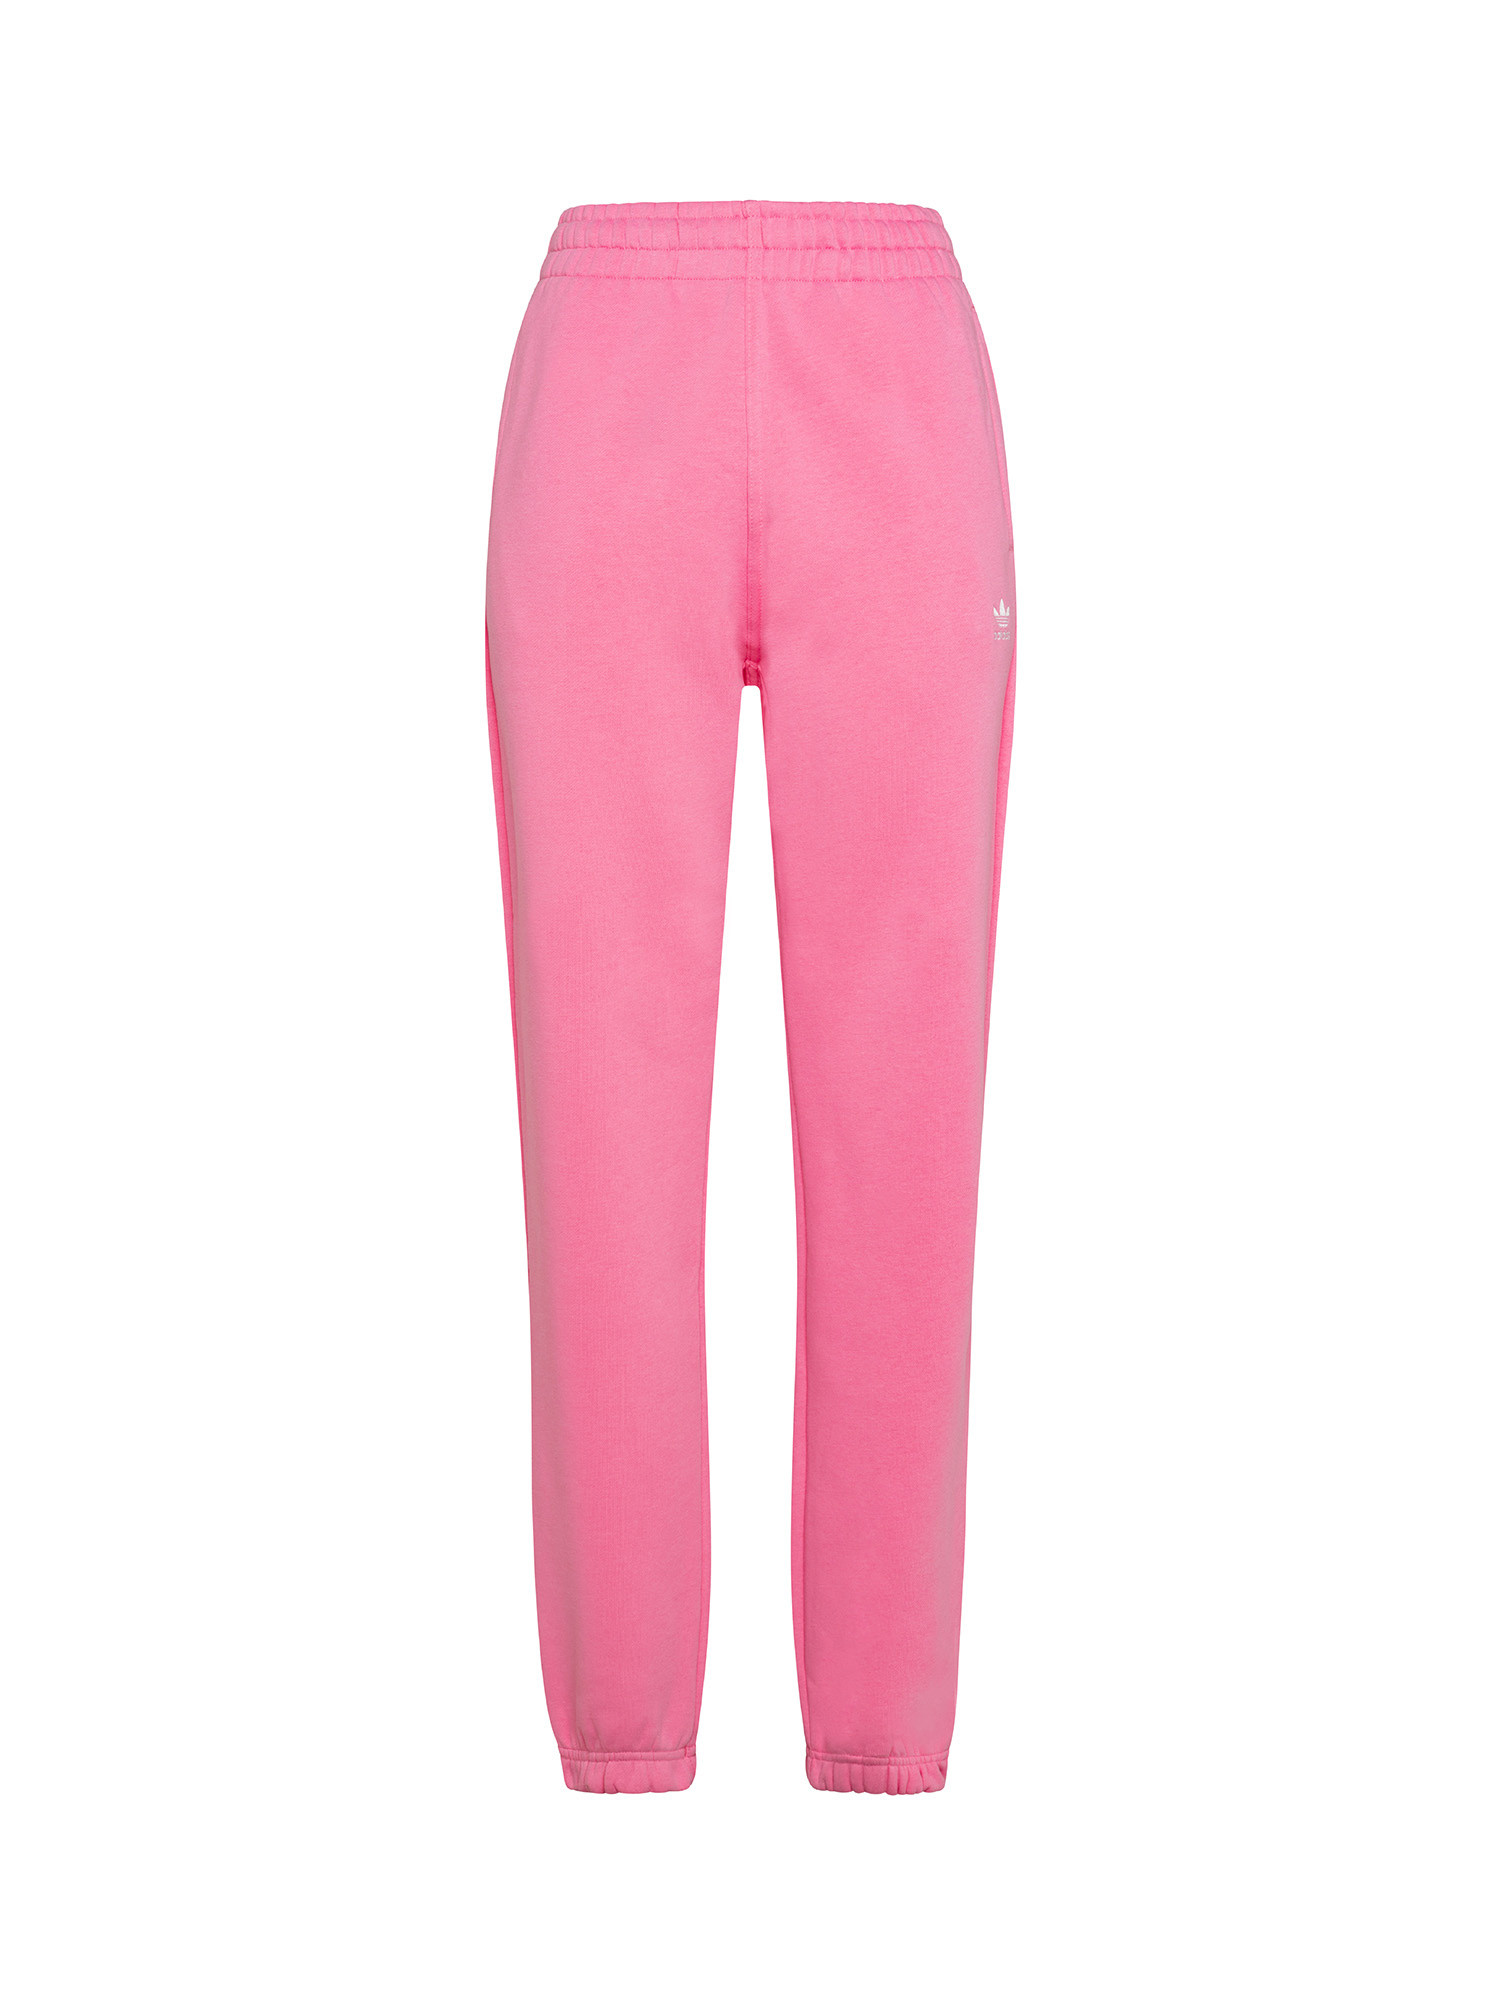 Adidas - Pantaloni adicolor essentials fleece joggers, Rosa, large image number 0